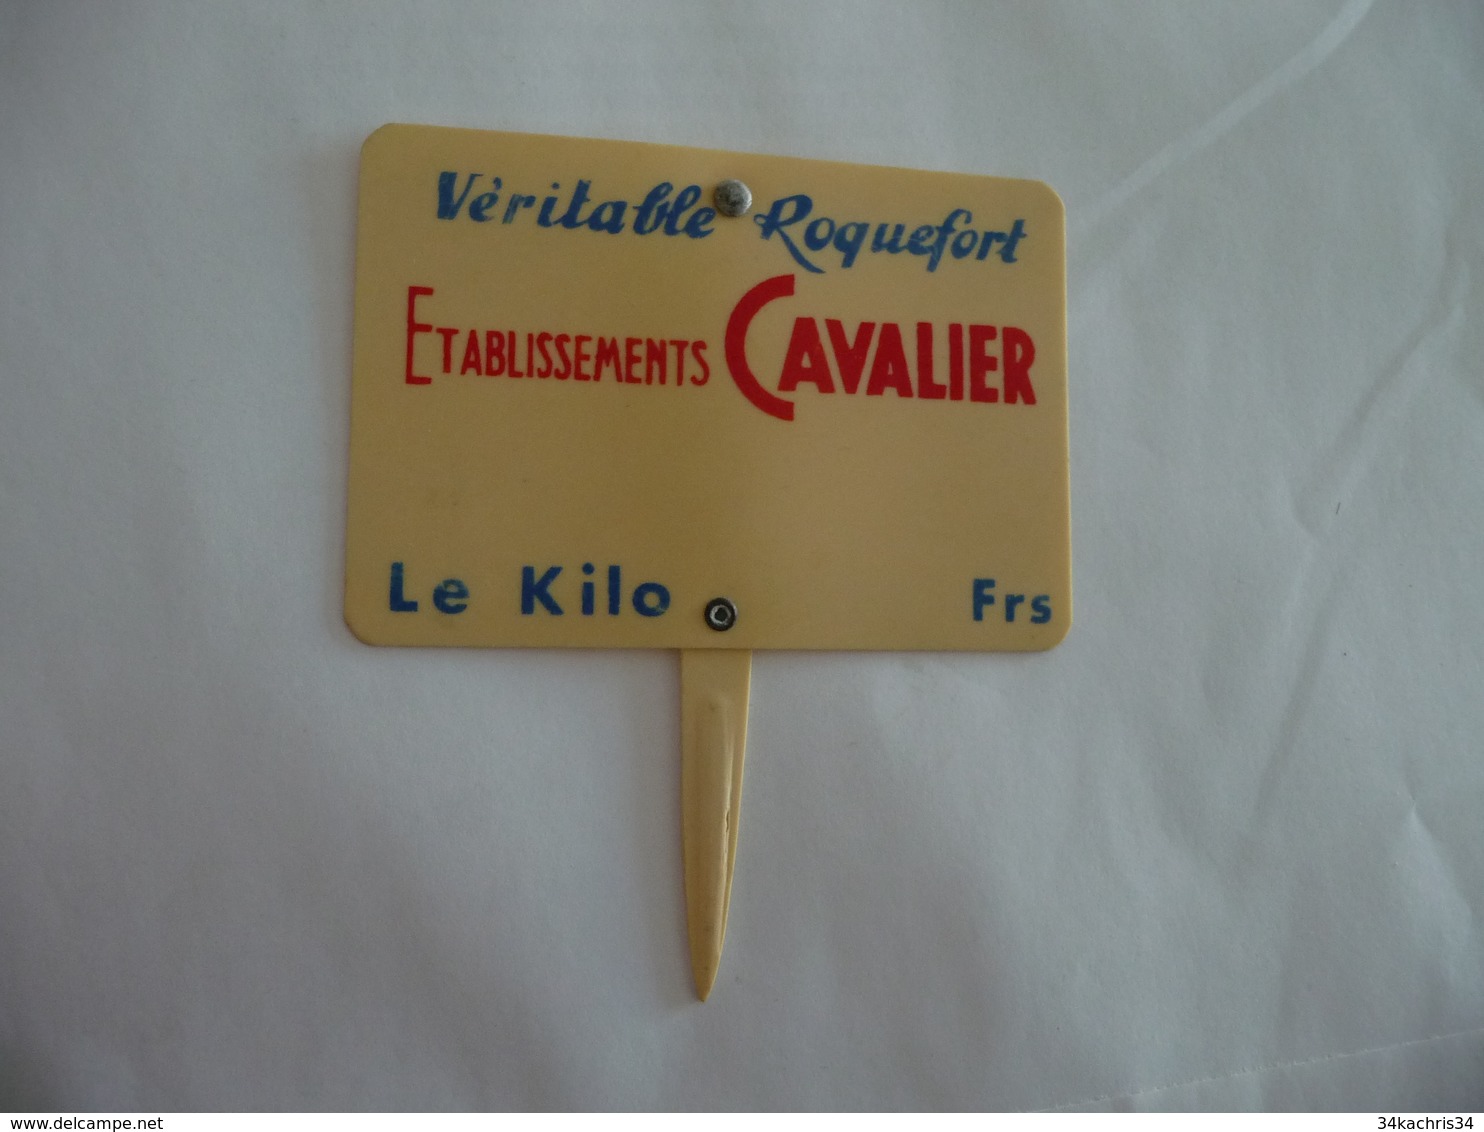 Étiquette Fromager Indicatif Prix Ancienne Roquefort Véritable Etablissements Cavalier - Fromage